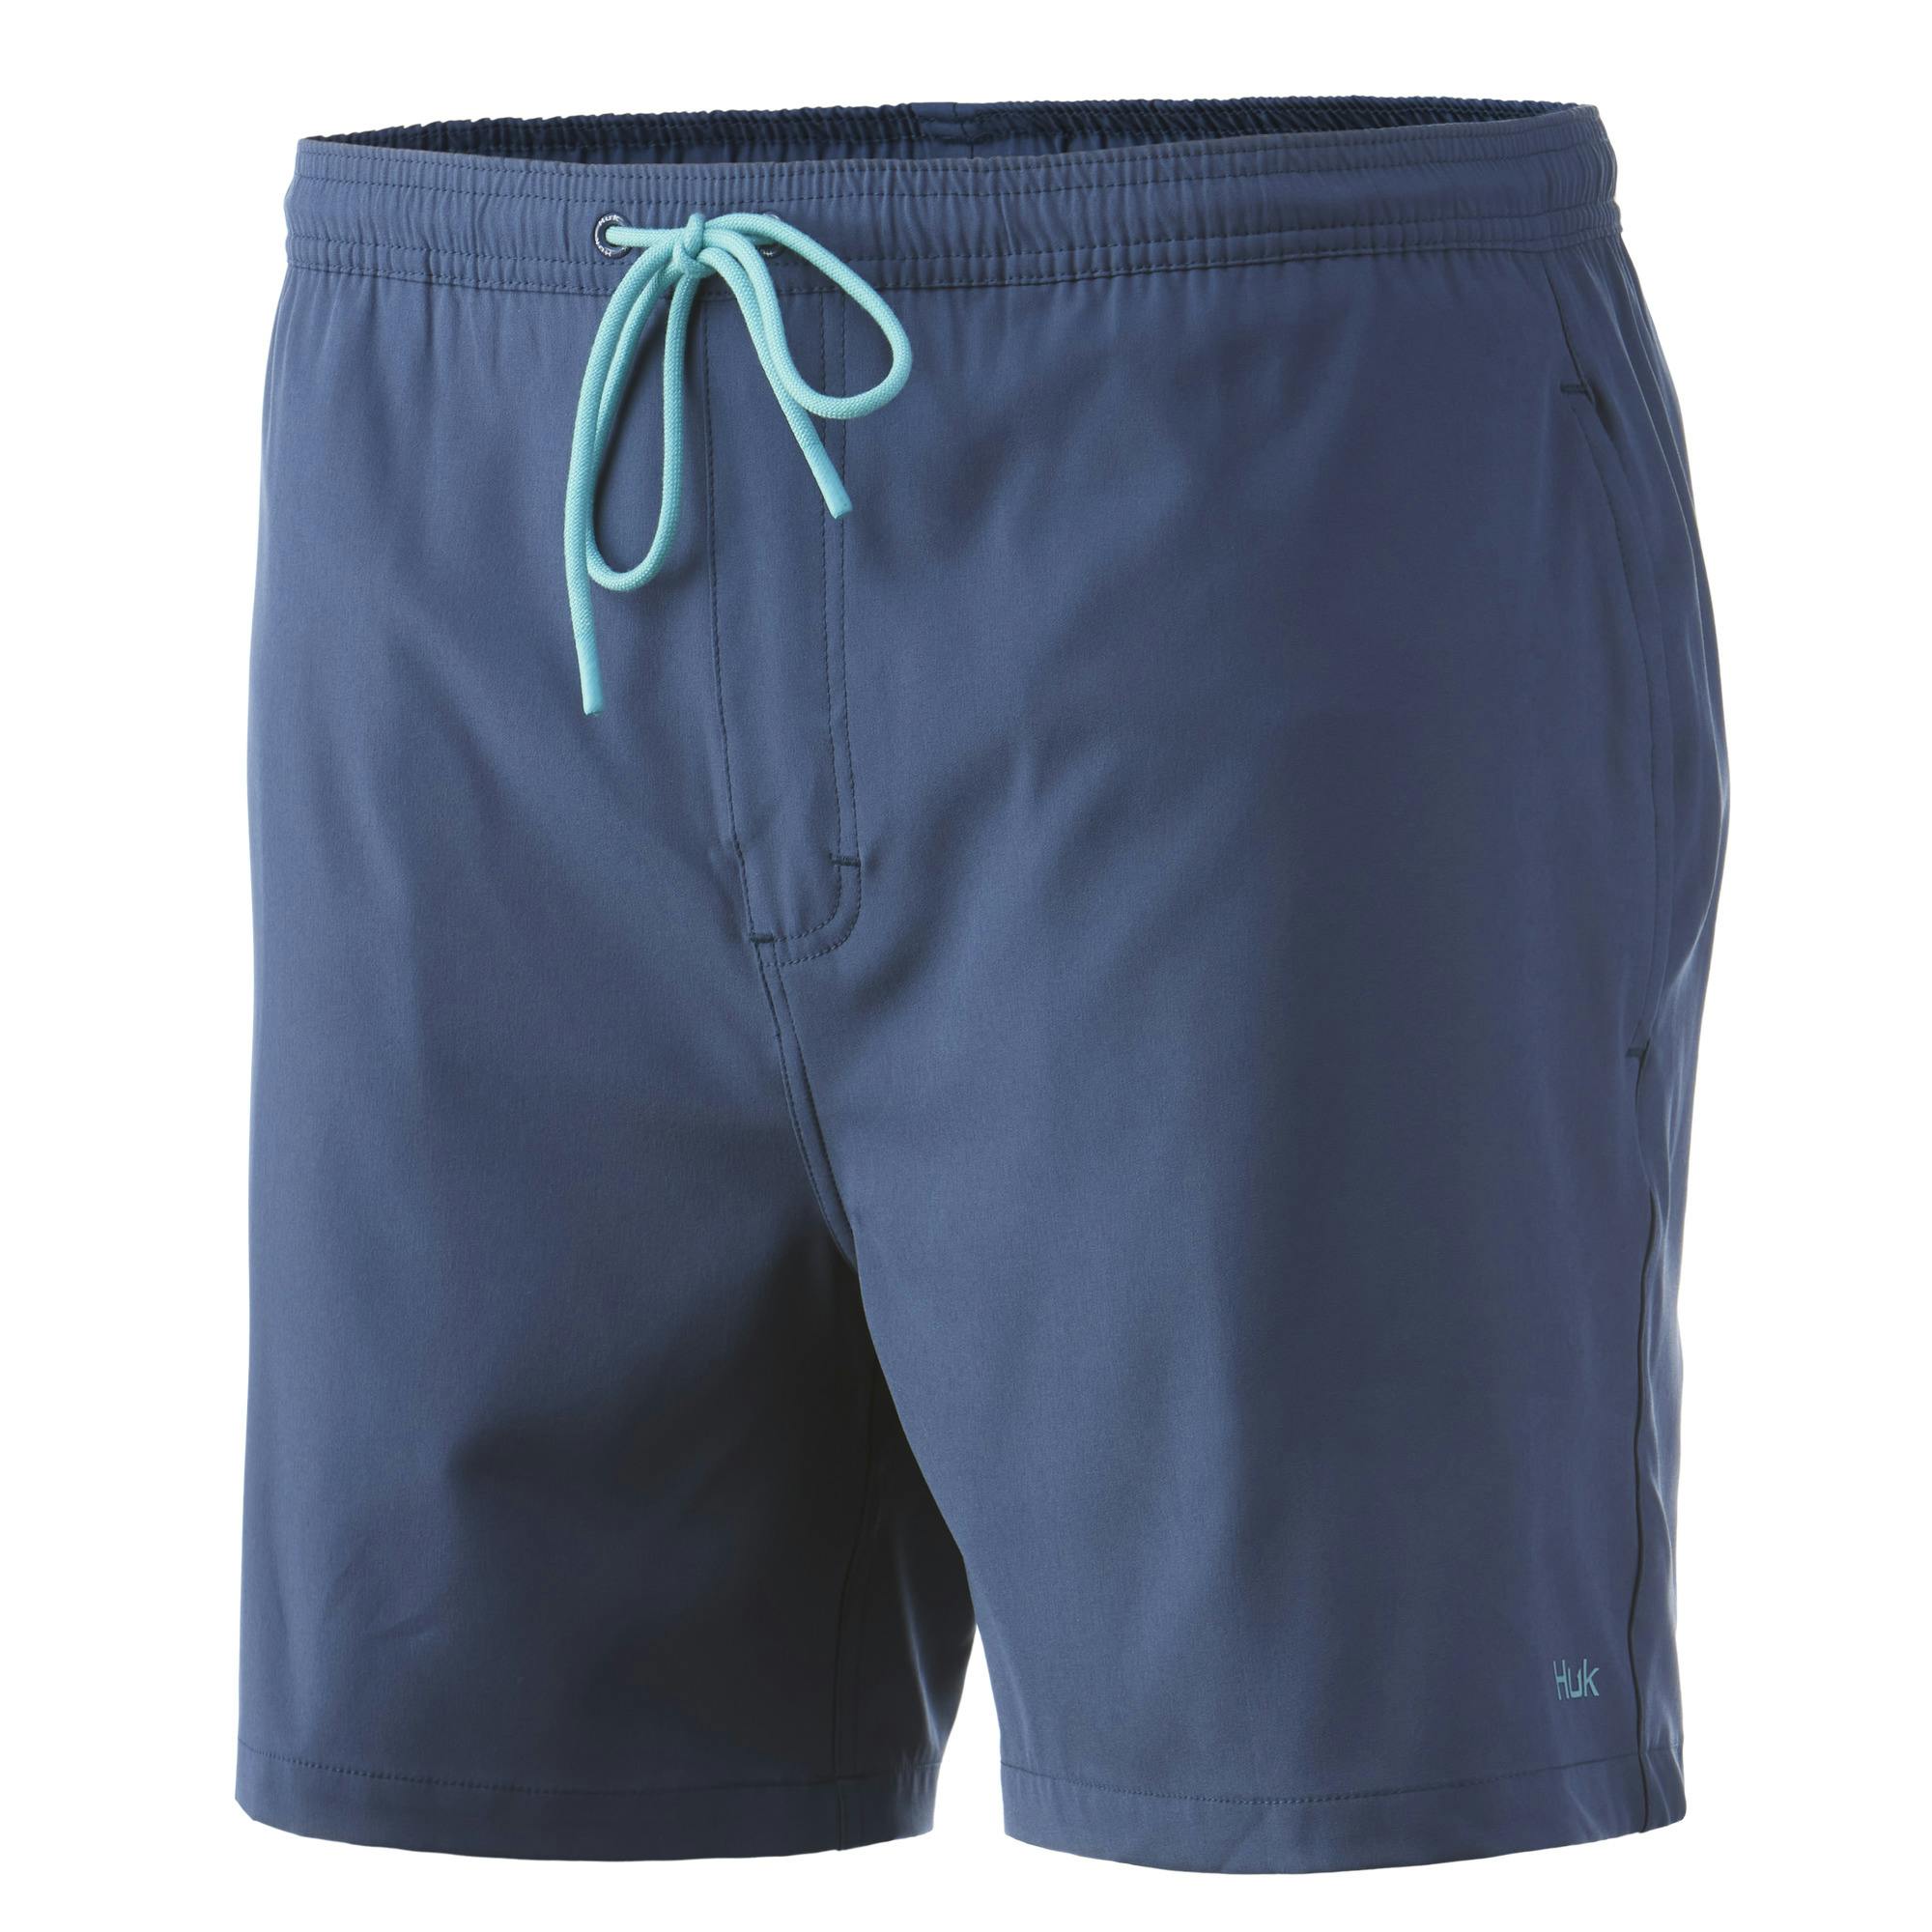 Huk Pursuit Volley Swim Shorts (Men's) Front - Titanium Blue